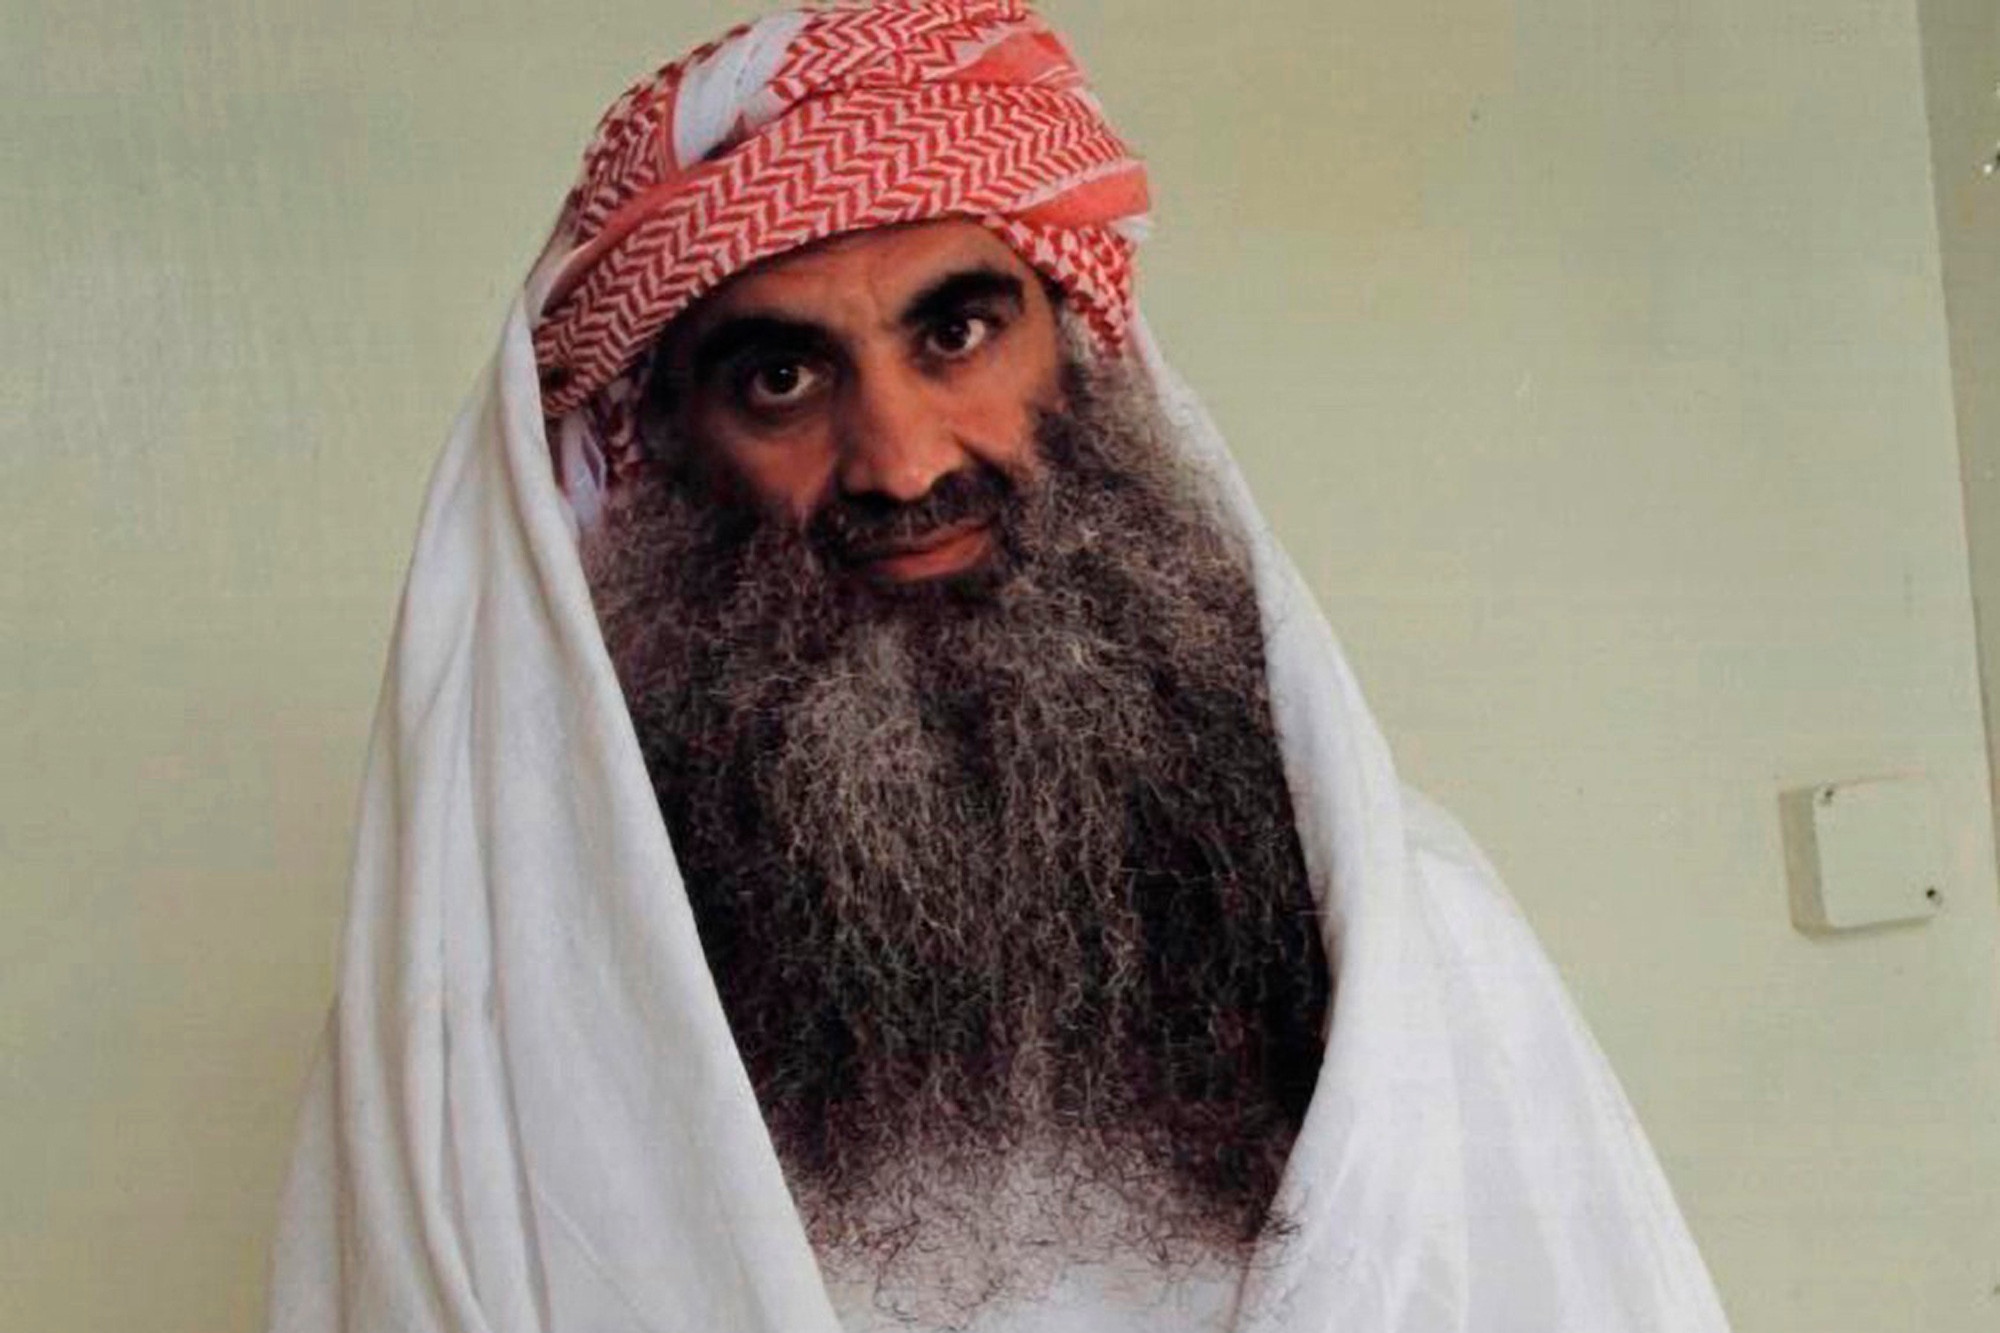 خليفة السبيعي ممول القاعدة والإرهابيين في البحرين تحت حماية تميم قطر